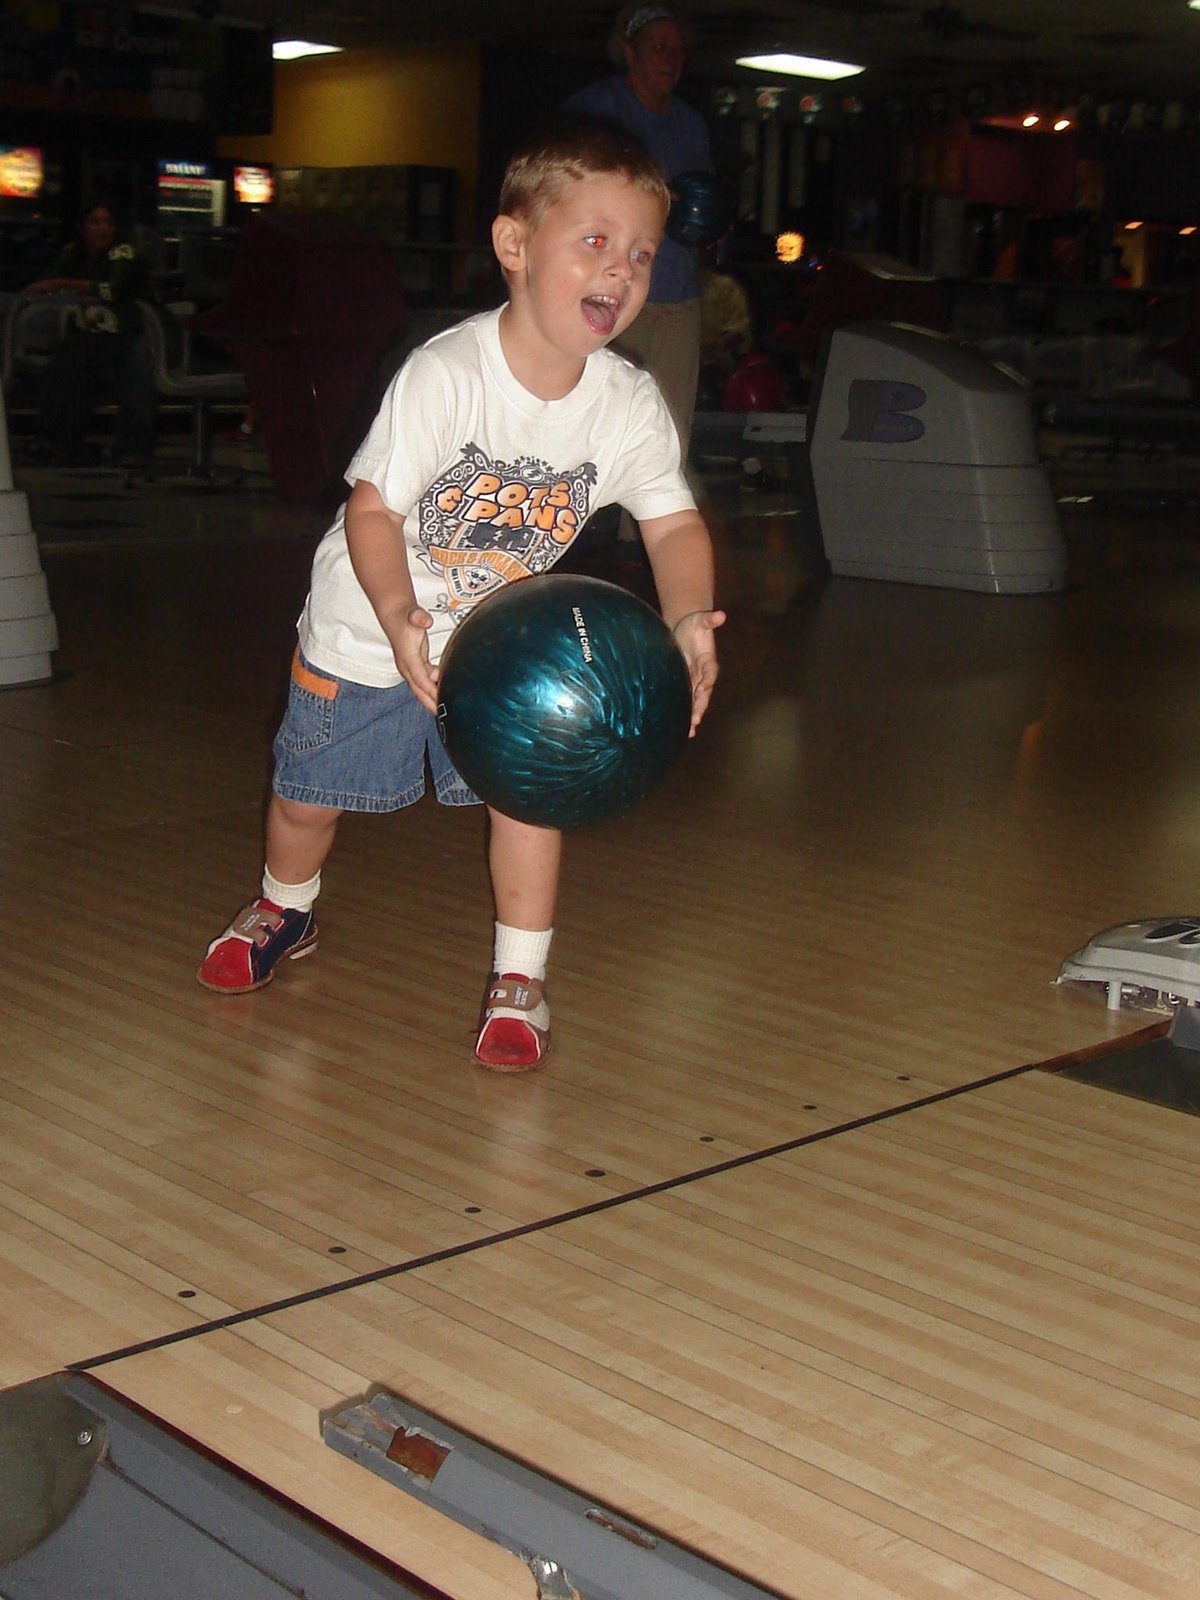 [Josh,+Hannah+bowling+2.jpg]